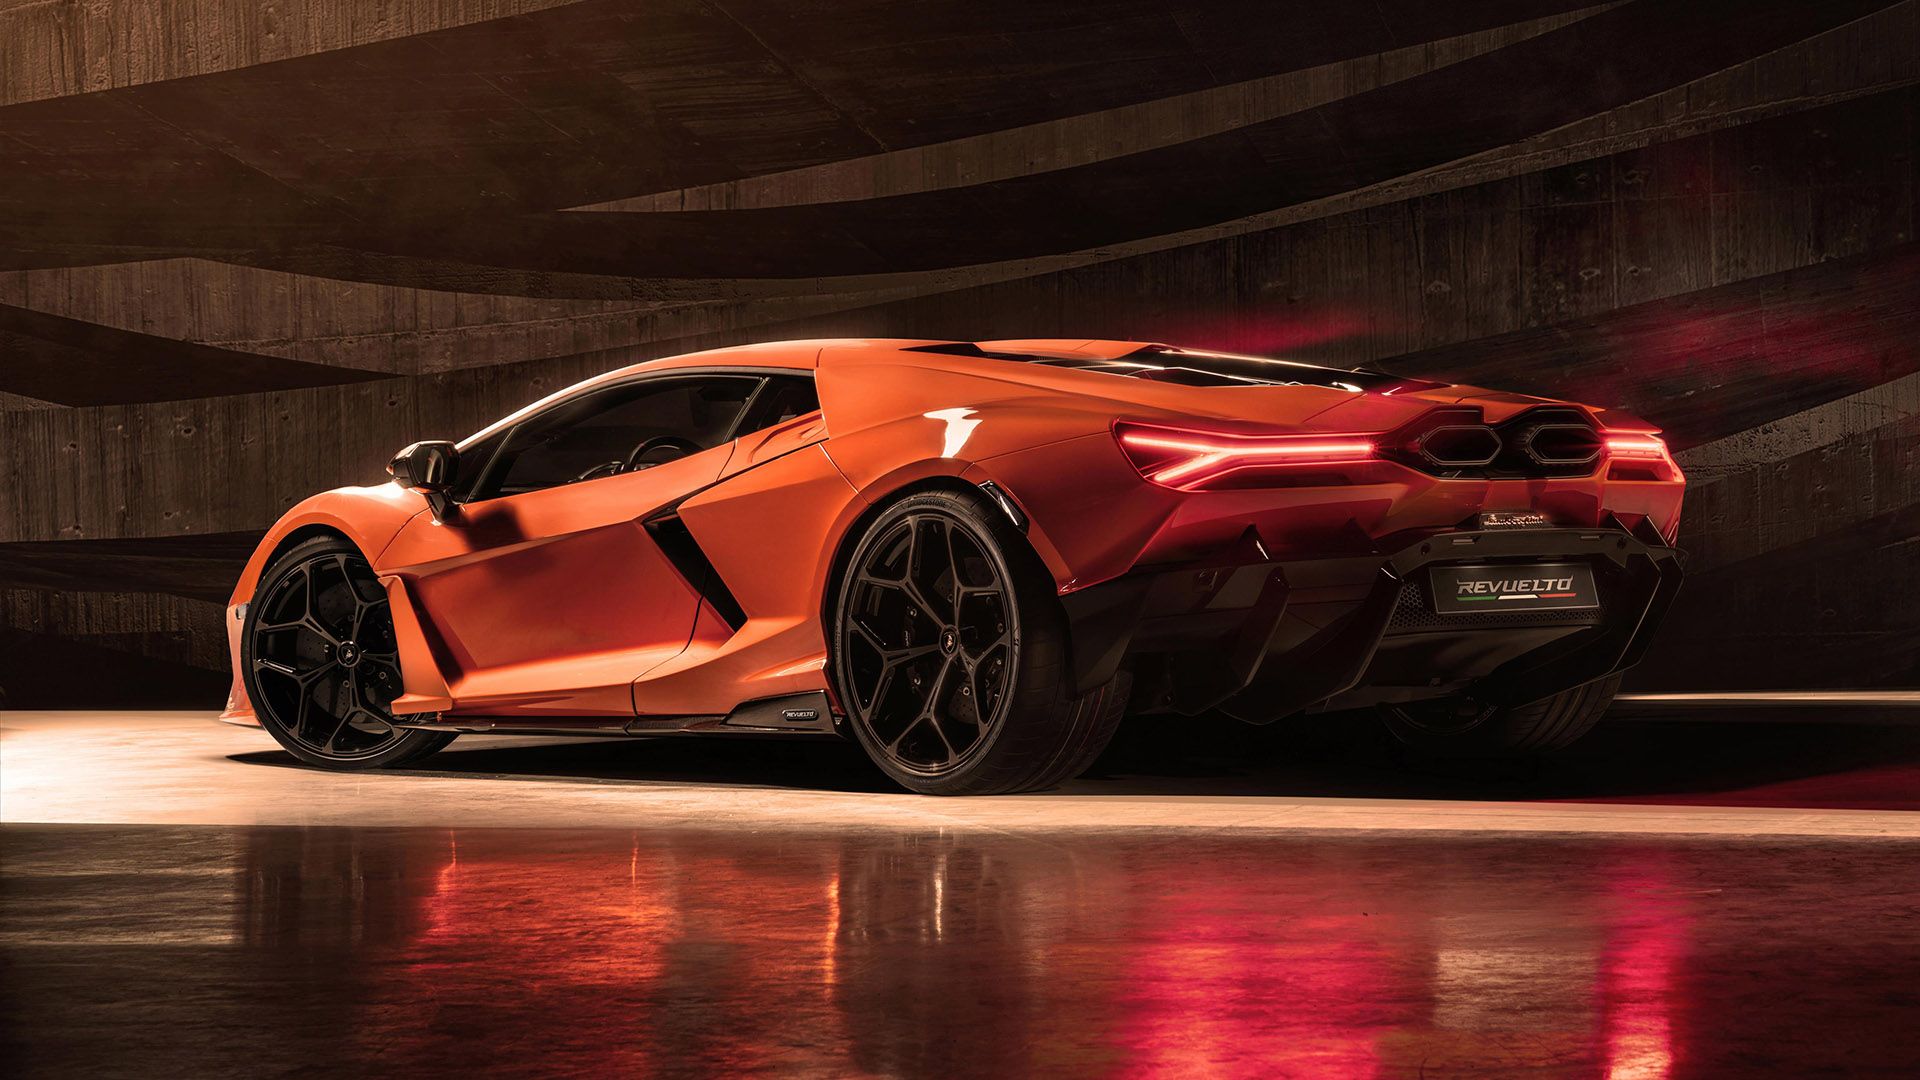 Orange Lamborghini Revuelto rear view